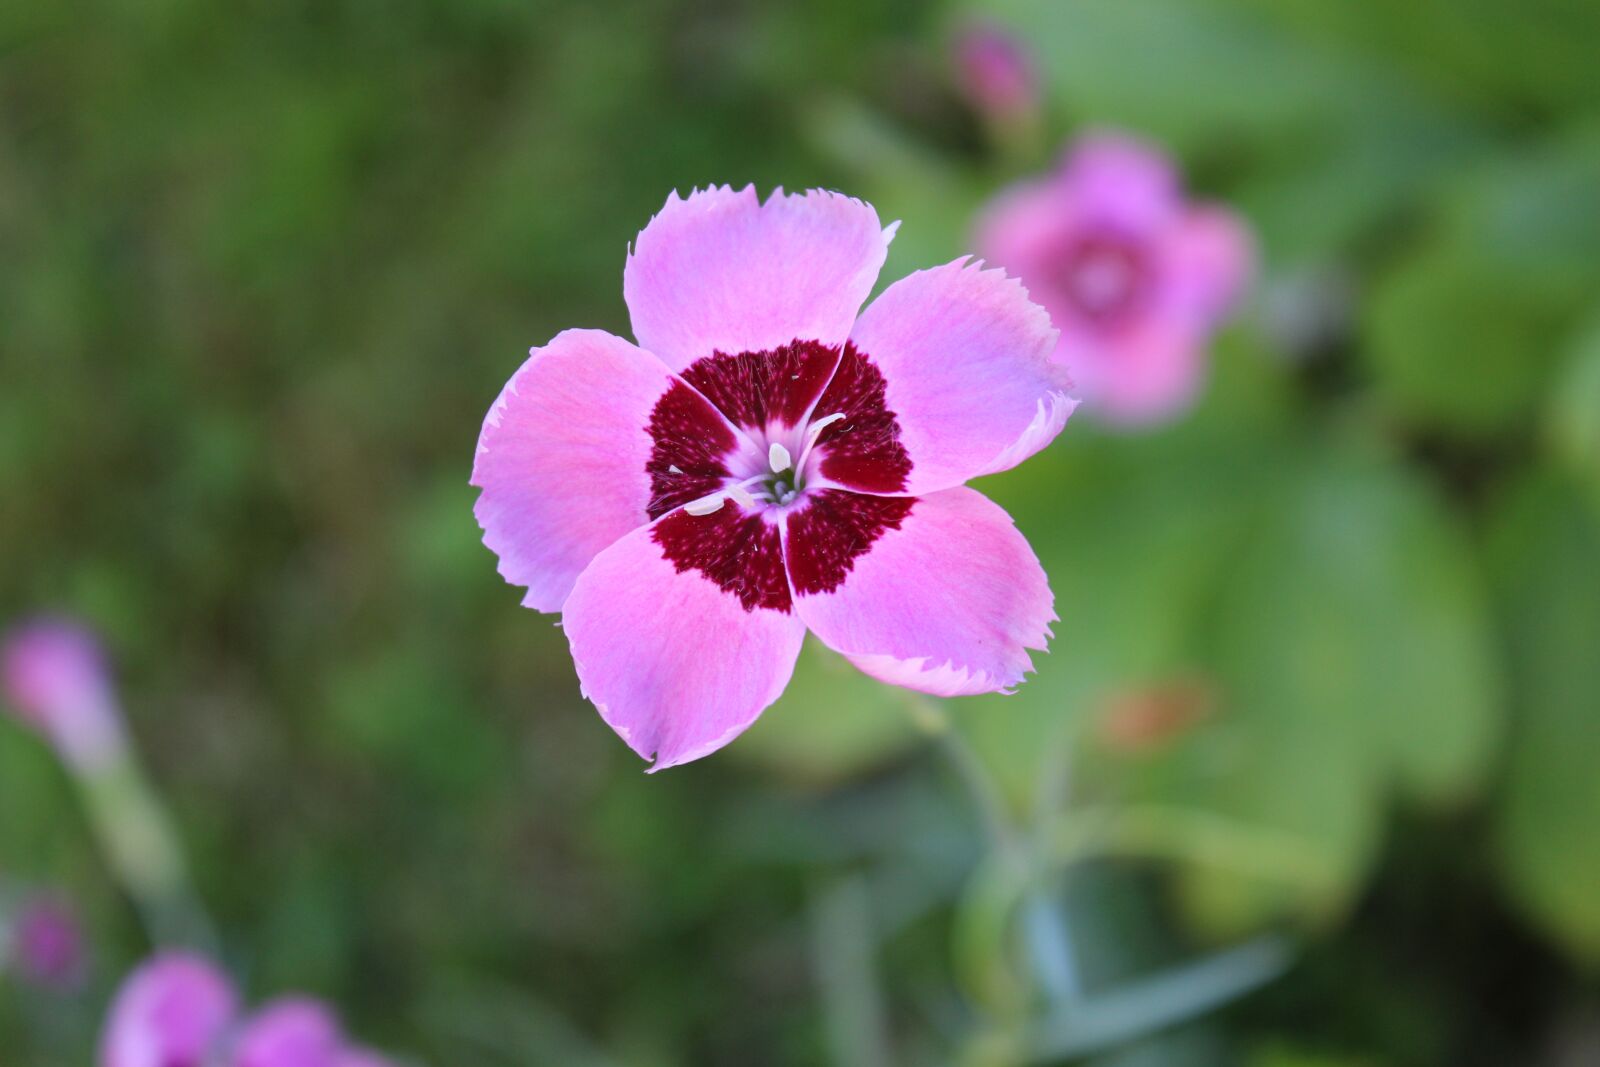 Canon EOS 1200D (EOS Rebel T5 / EOS Kiss X70 / EOS Hi) sample photo. Flower, garden, nature photography